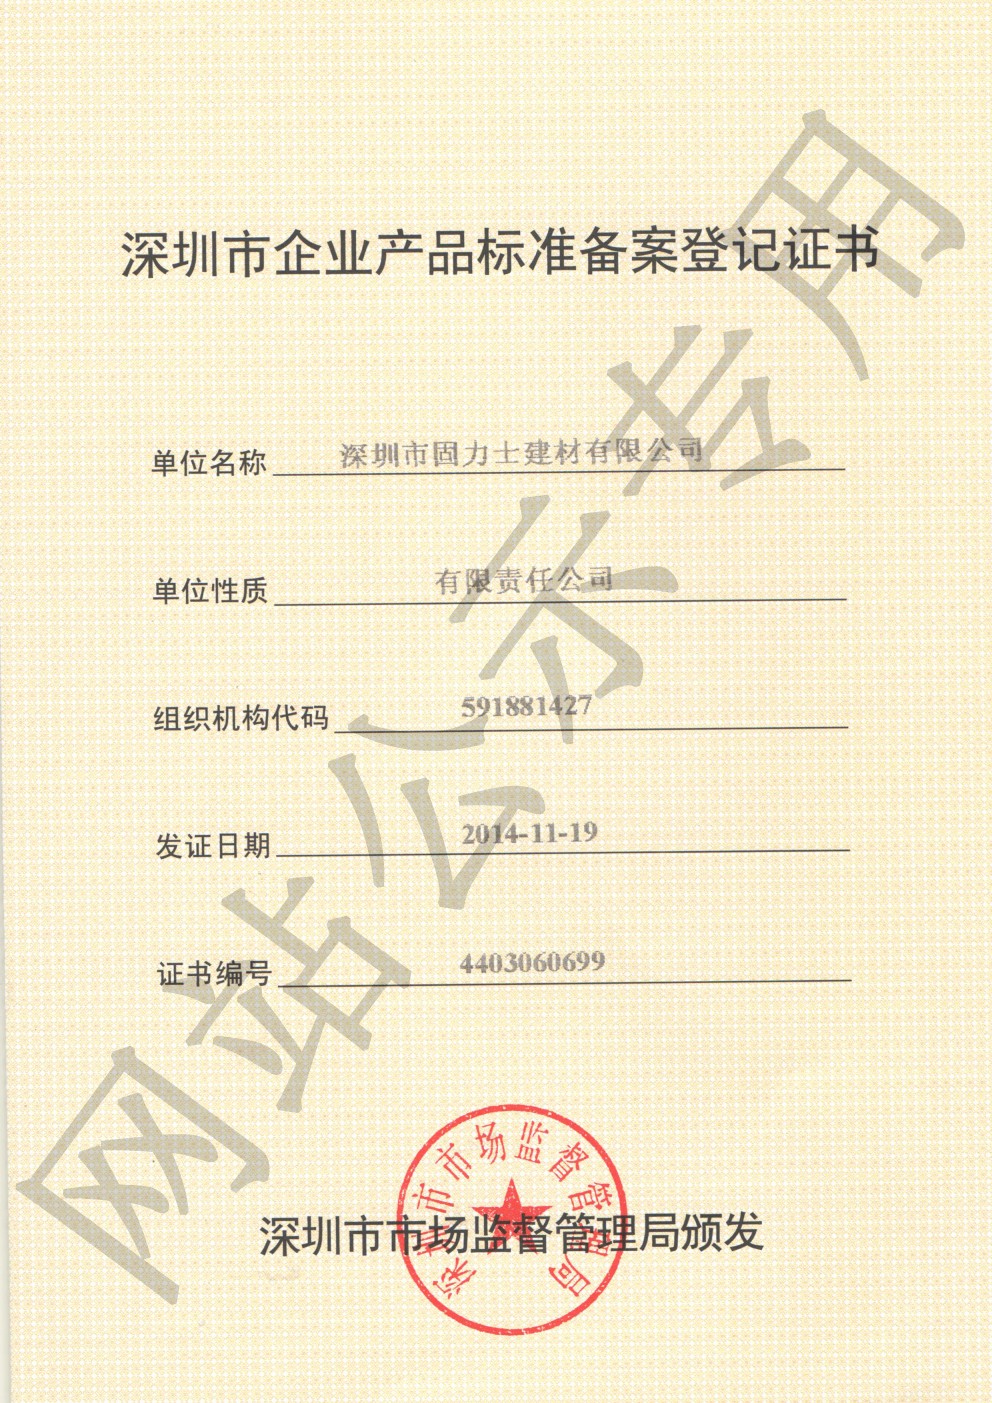 明山企业产品标准登记证书